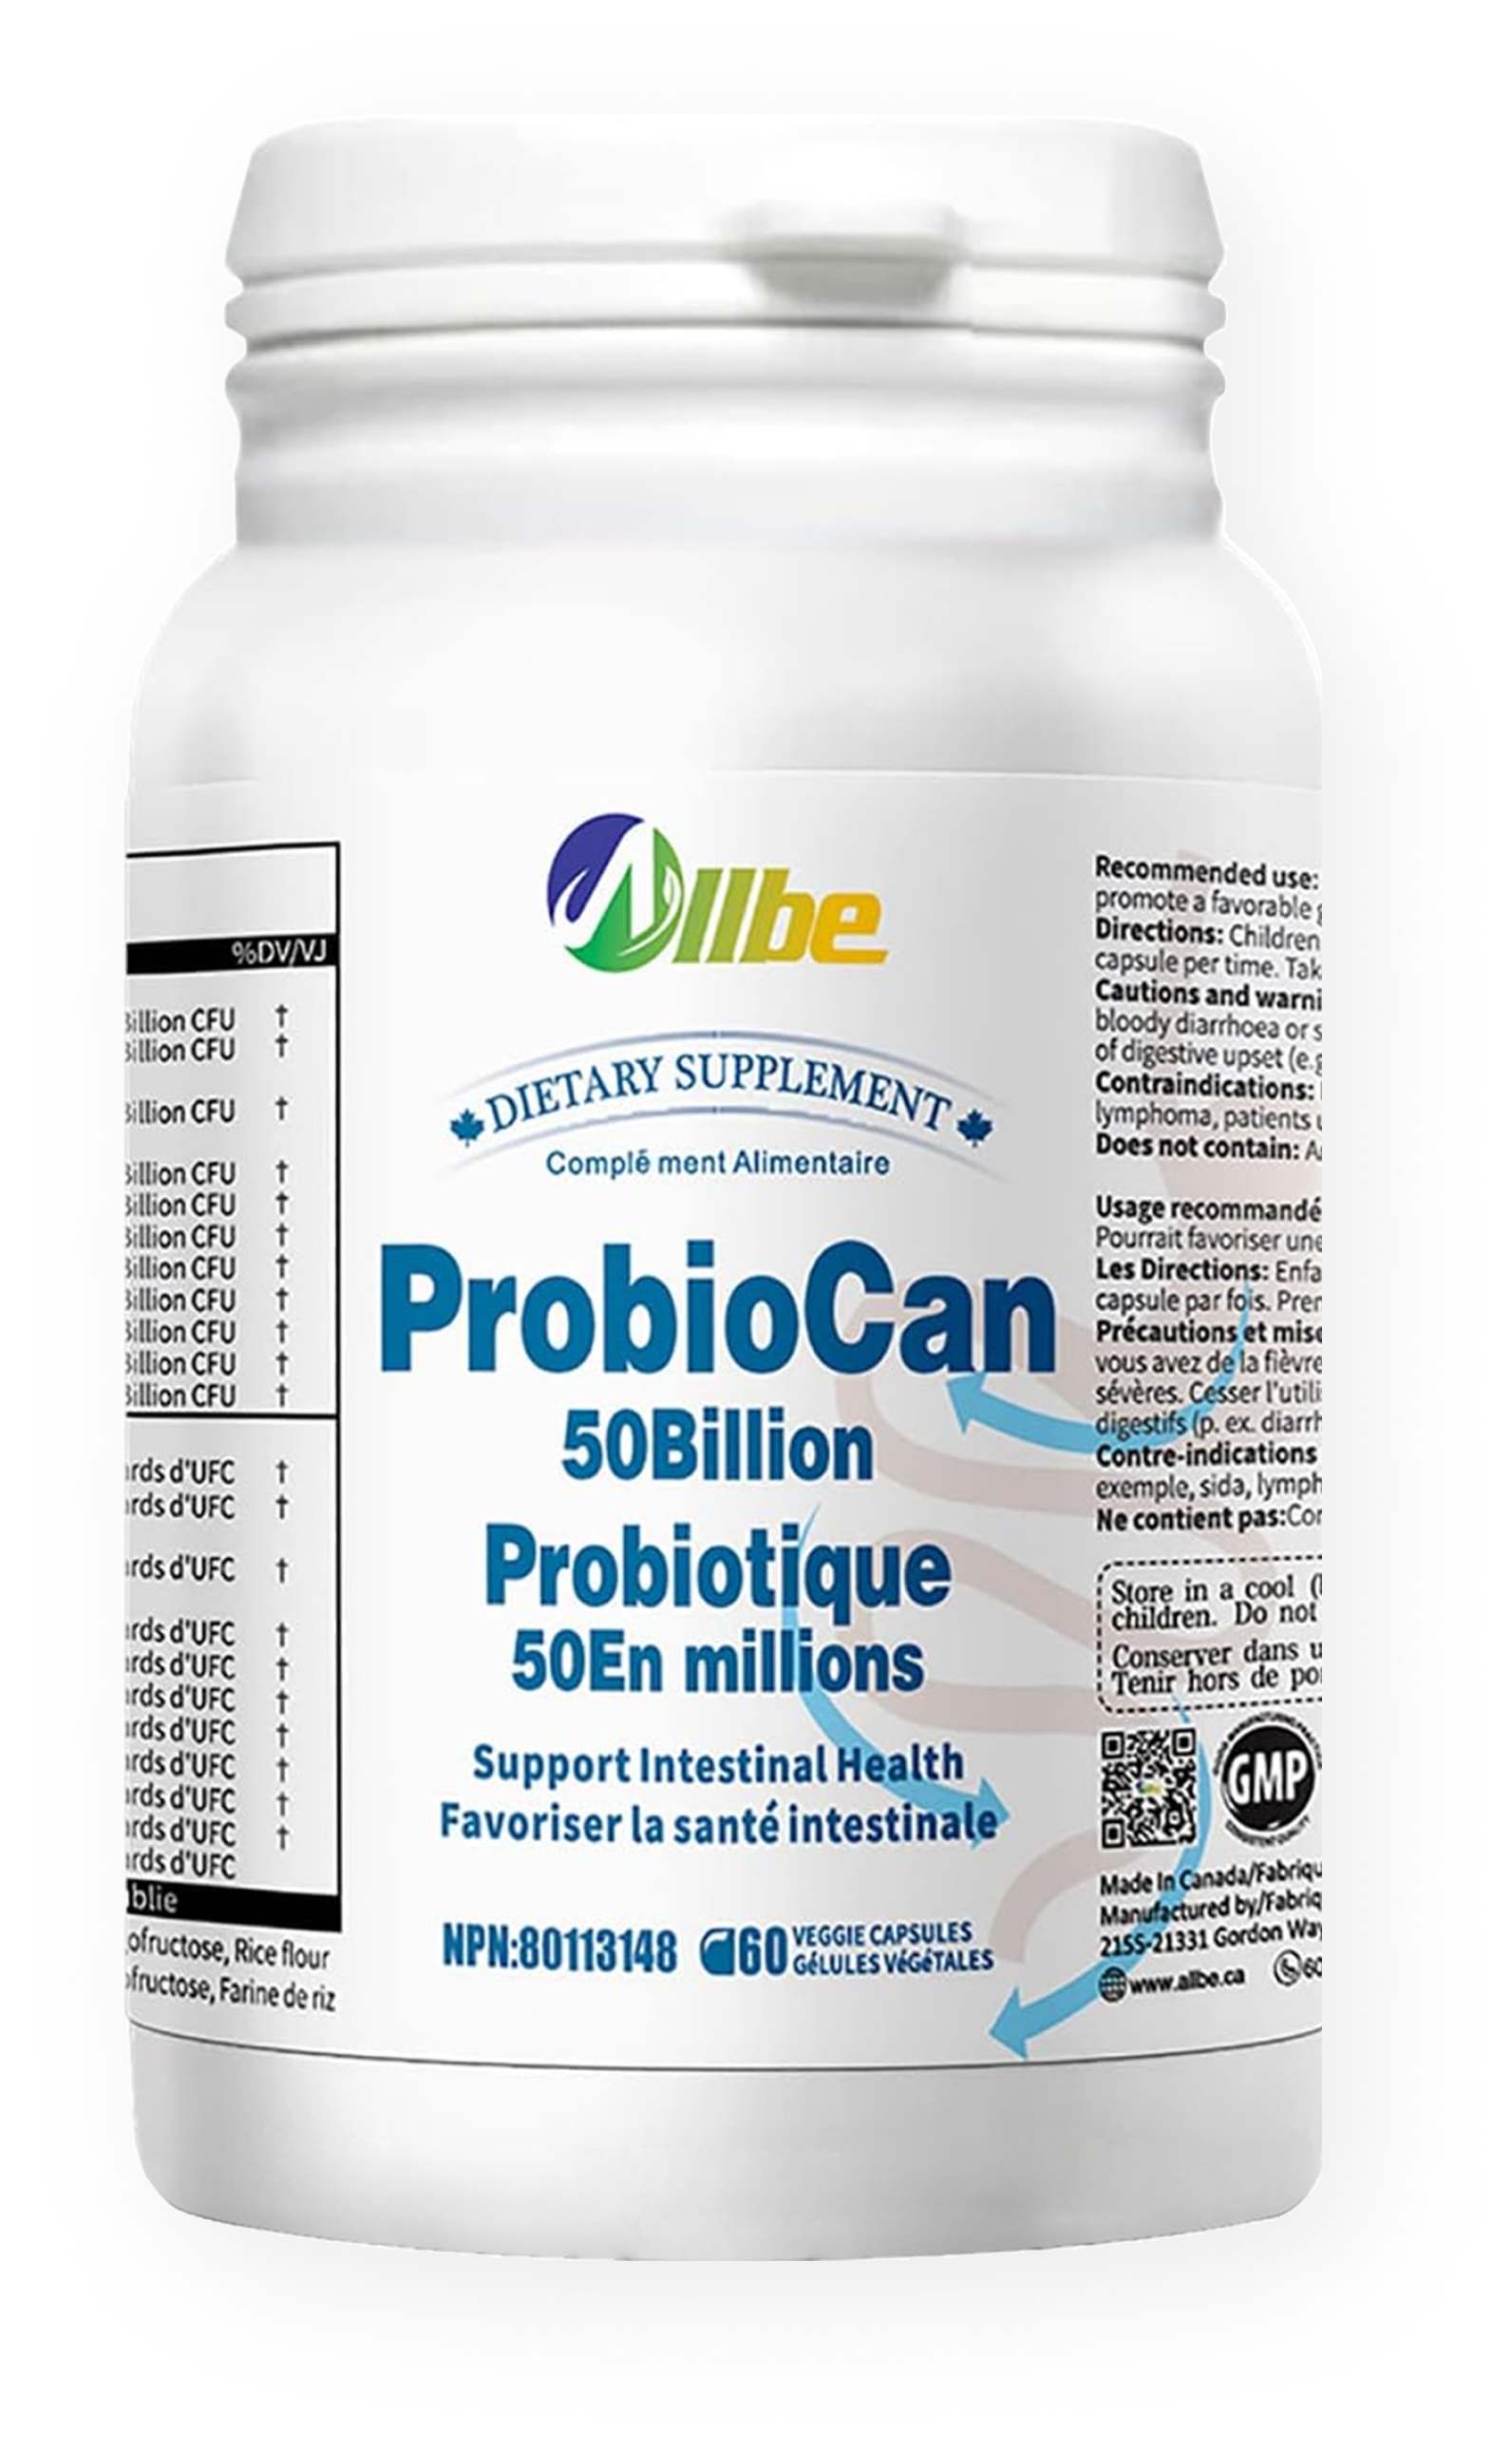 Probiocan 50 billion health supplements